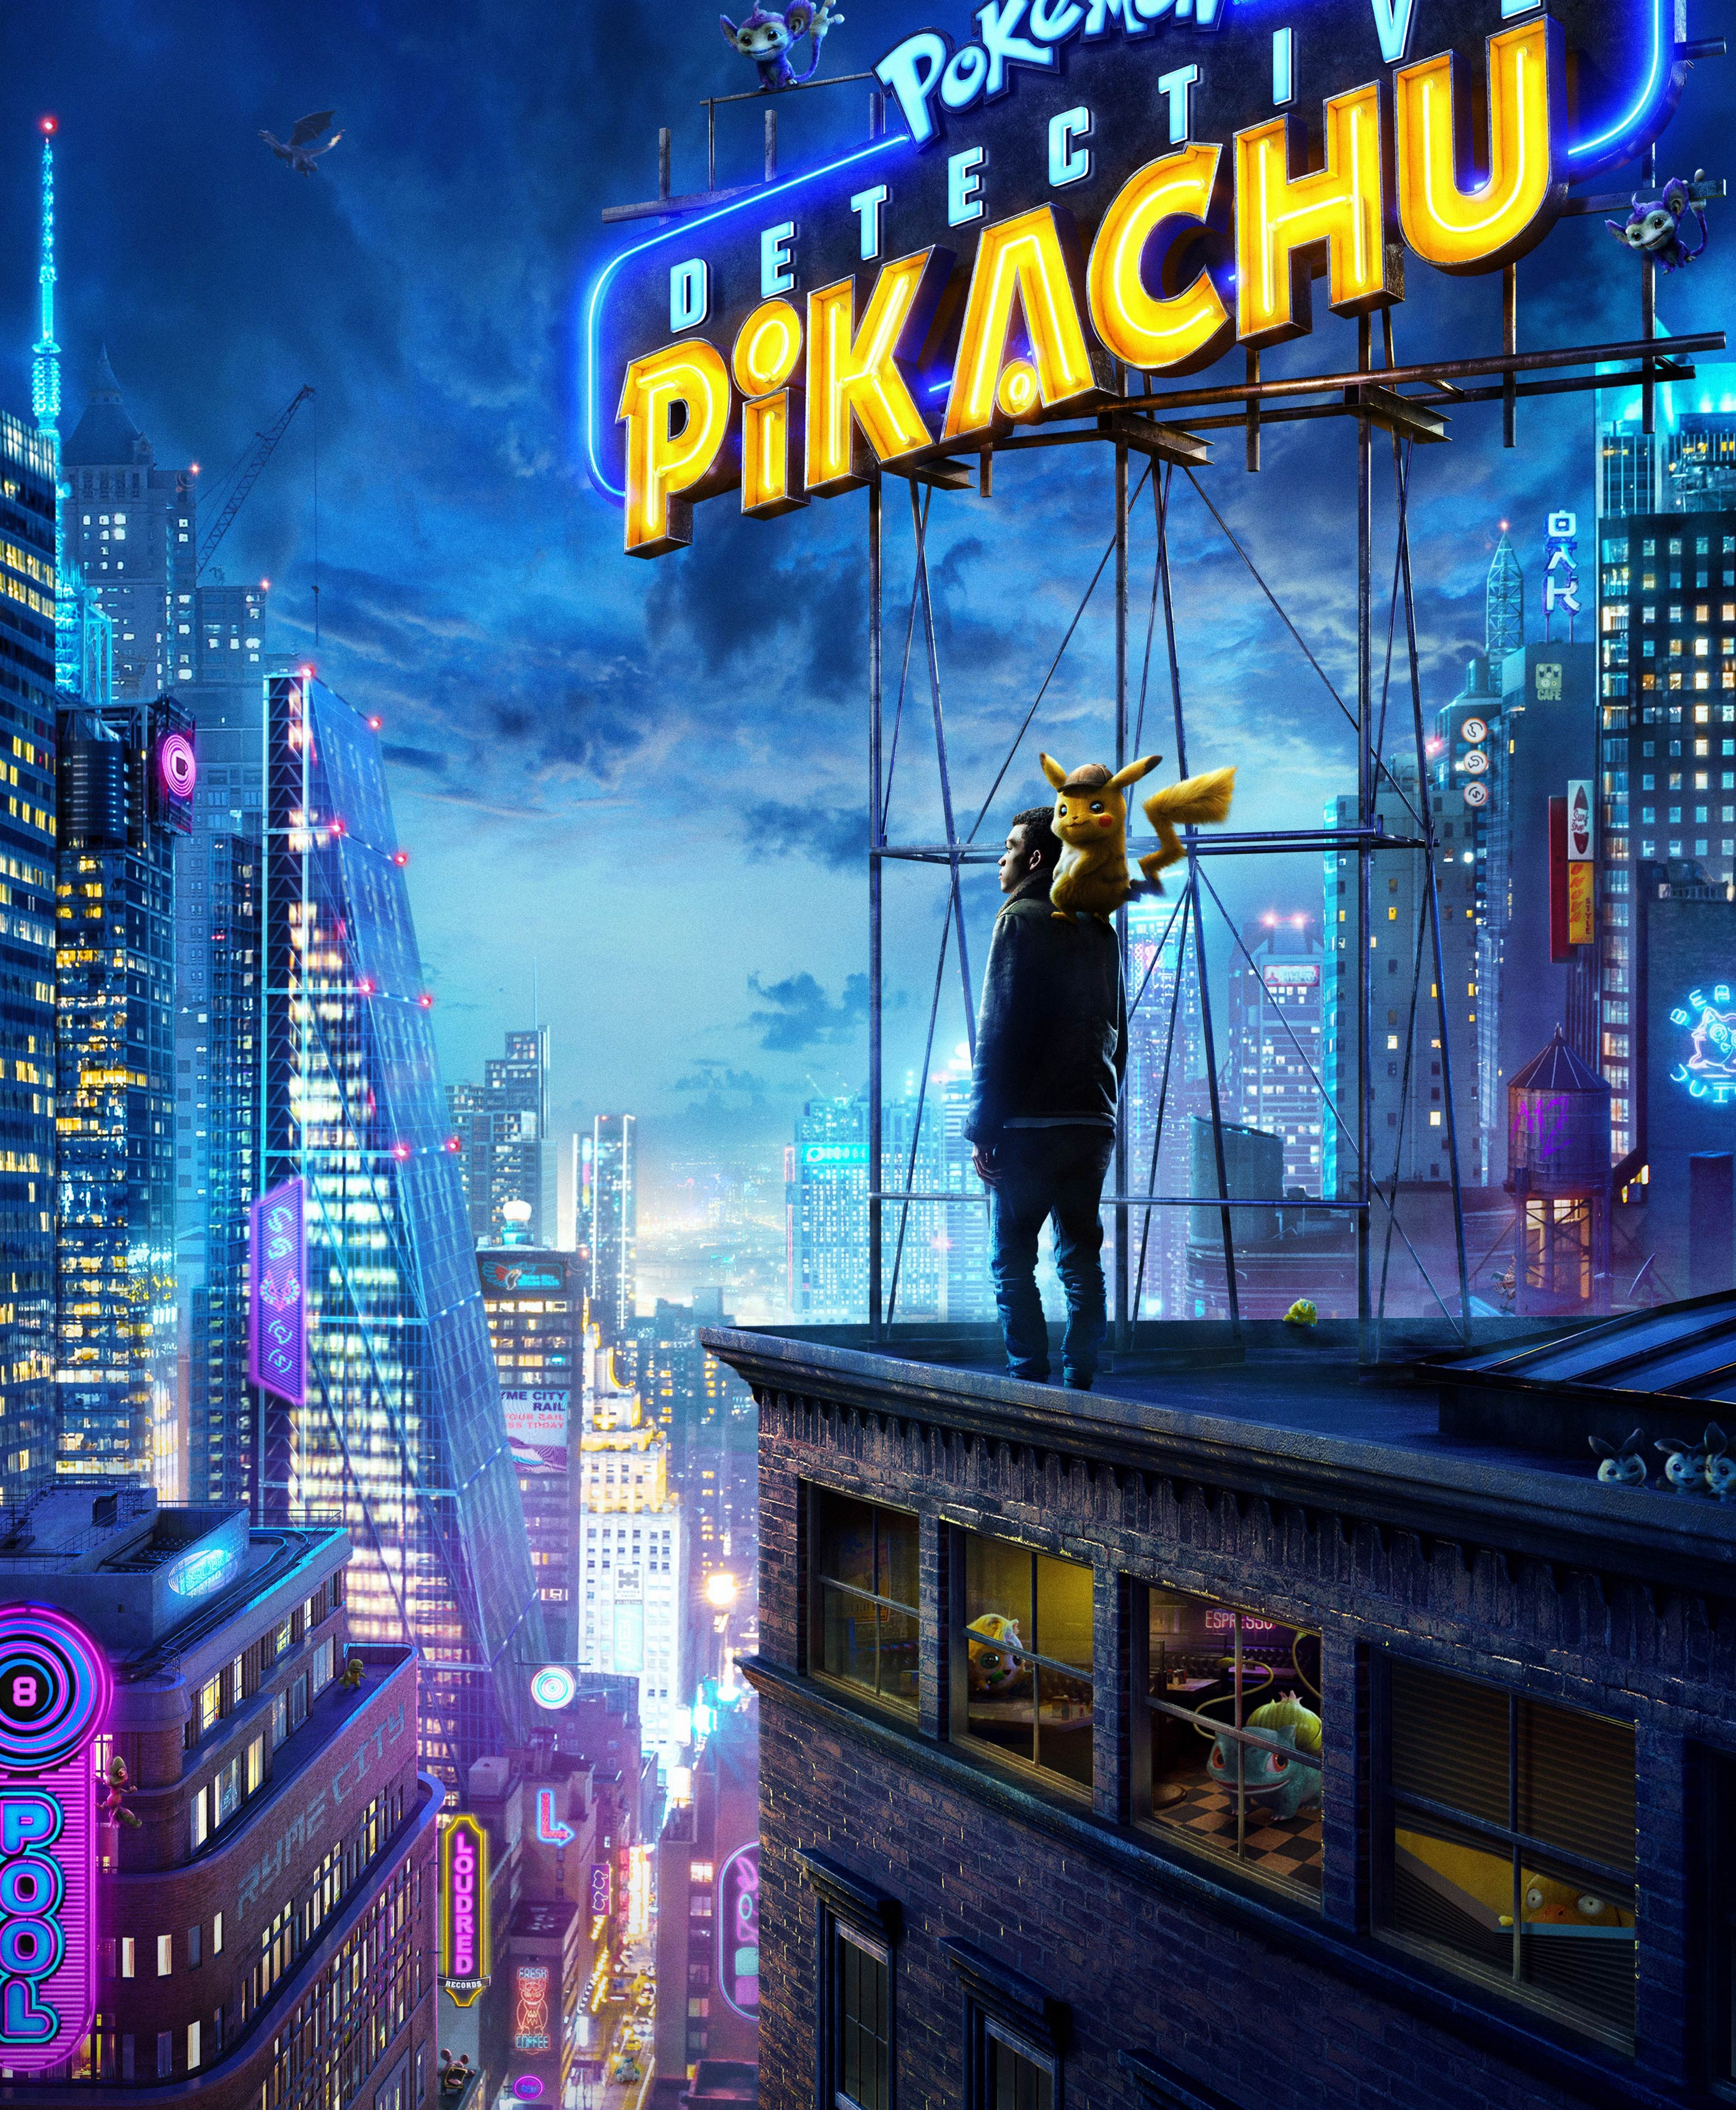 carta da parati pikachu,gioco di avventura e azione,gioco per pc,giochi,città,film